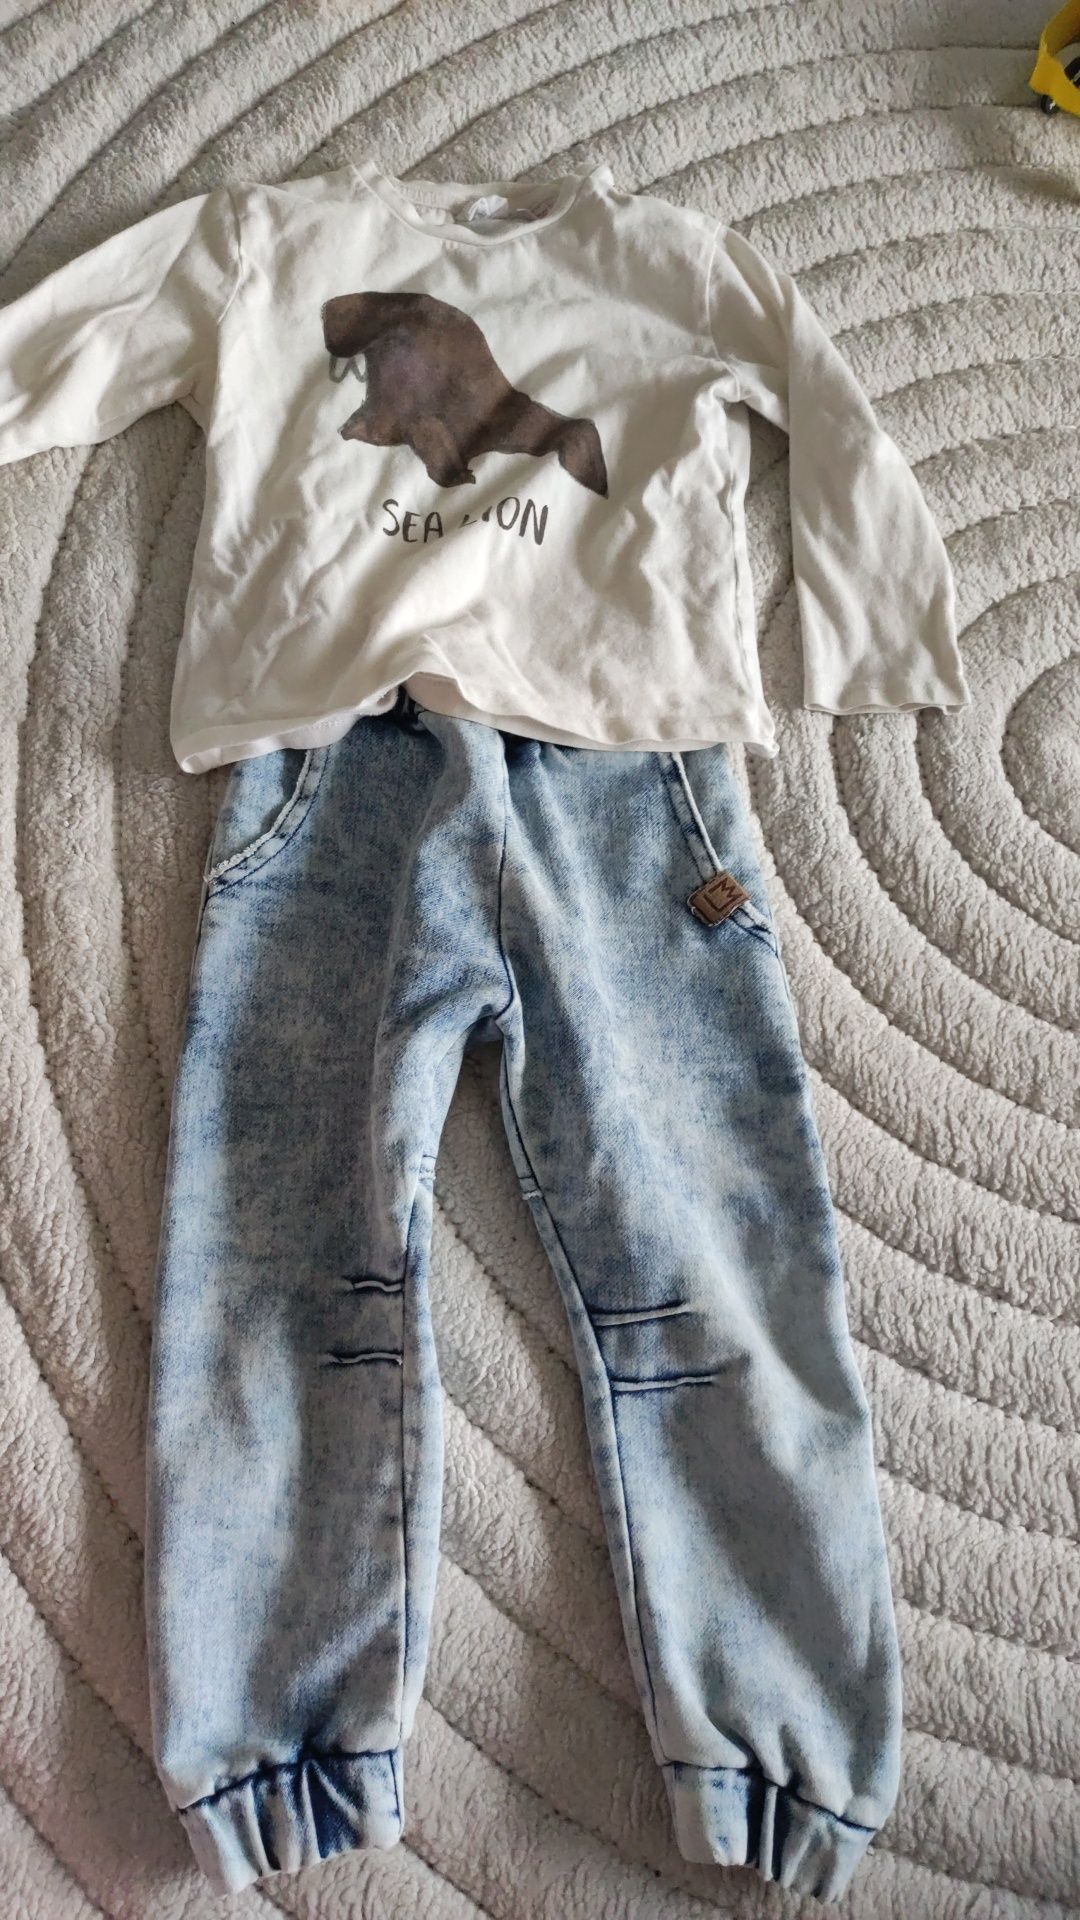 Zestaw spodni krzywa noga a'la jeans by Mimi, bluzka Zara 98